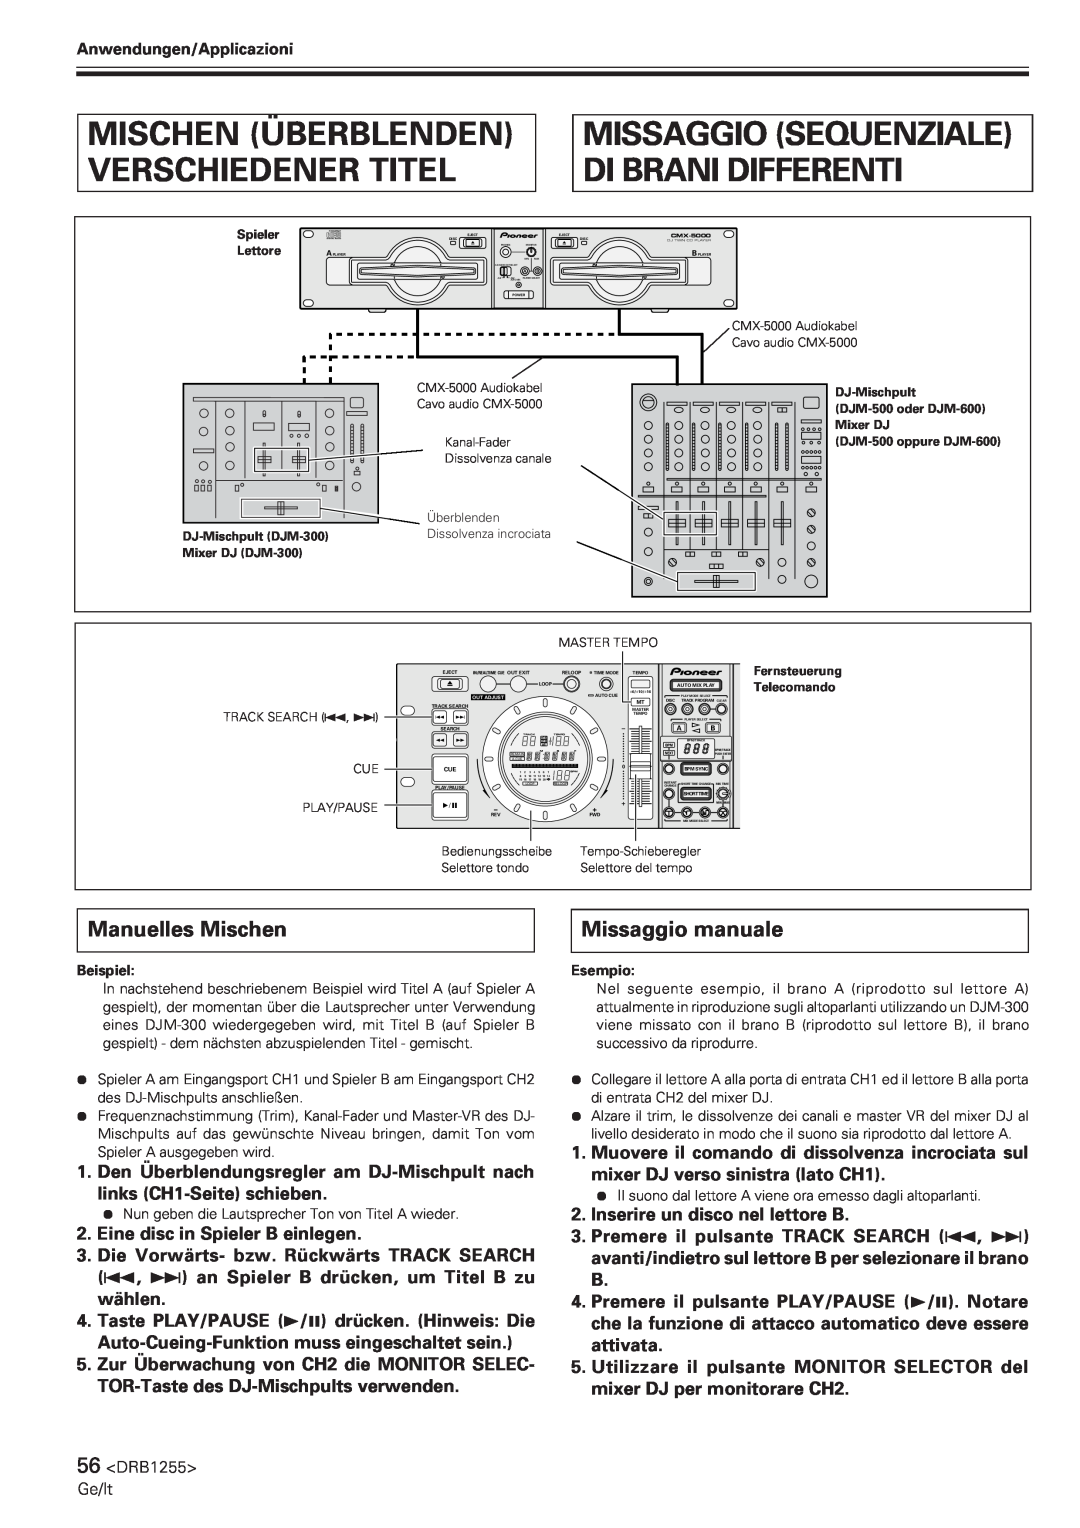 Pioneer CMX-5000 Mischen Überblenden Verschiedener Titel, Missaggio Sequenziale Di Brani Differenti, Manuelles Mischen 